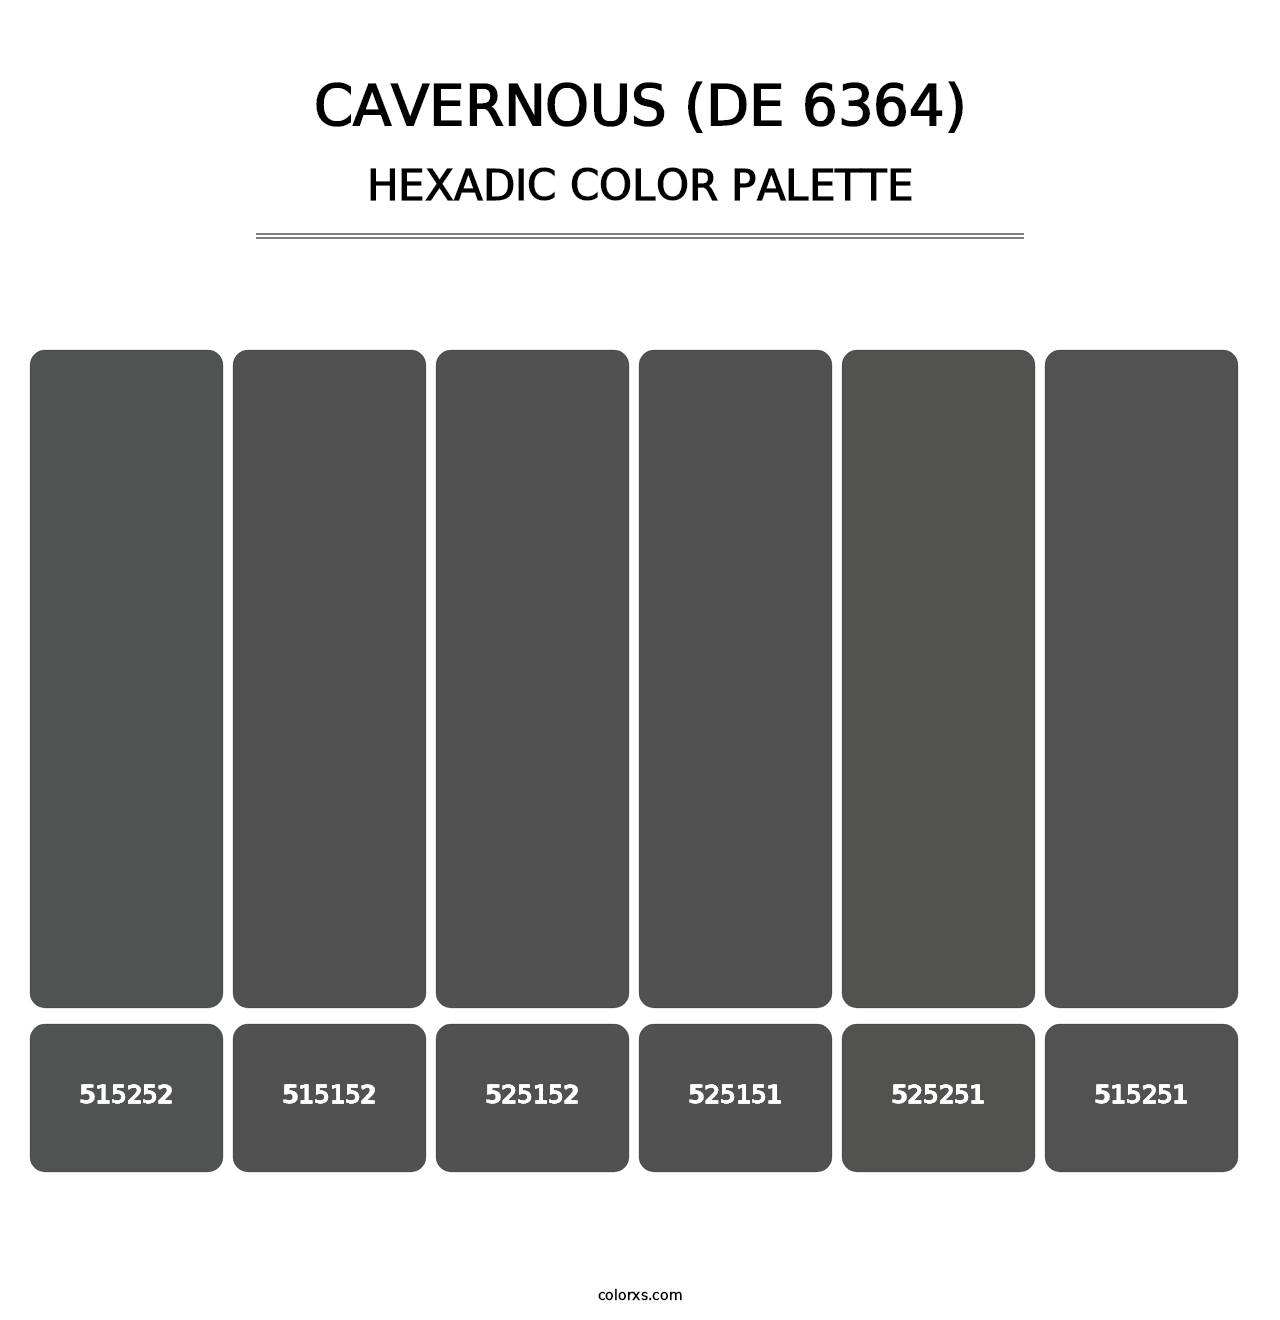 Cavernous (DE 6364) - Hexadic Color Palette